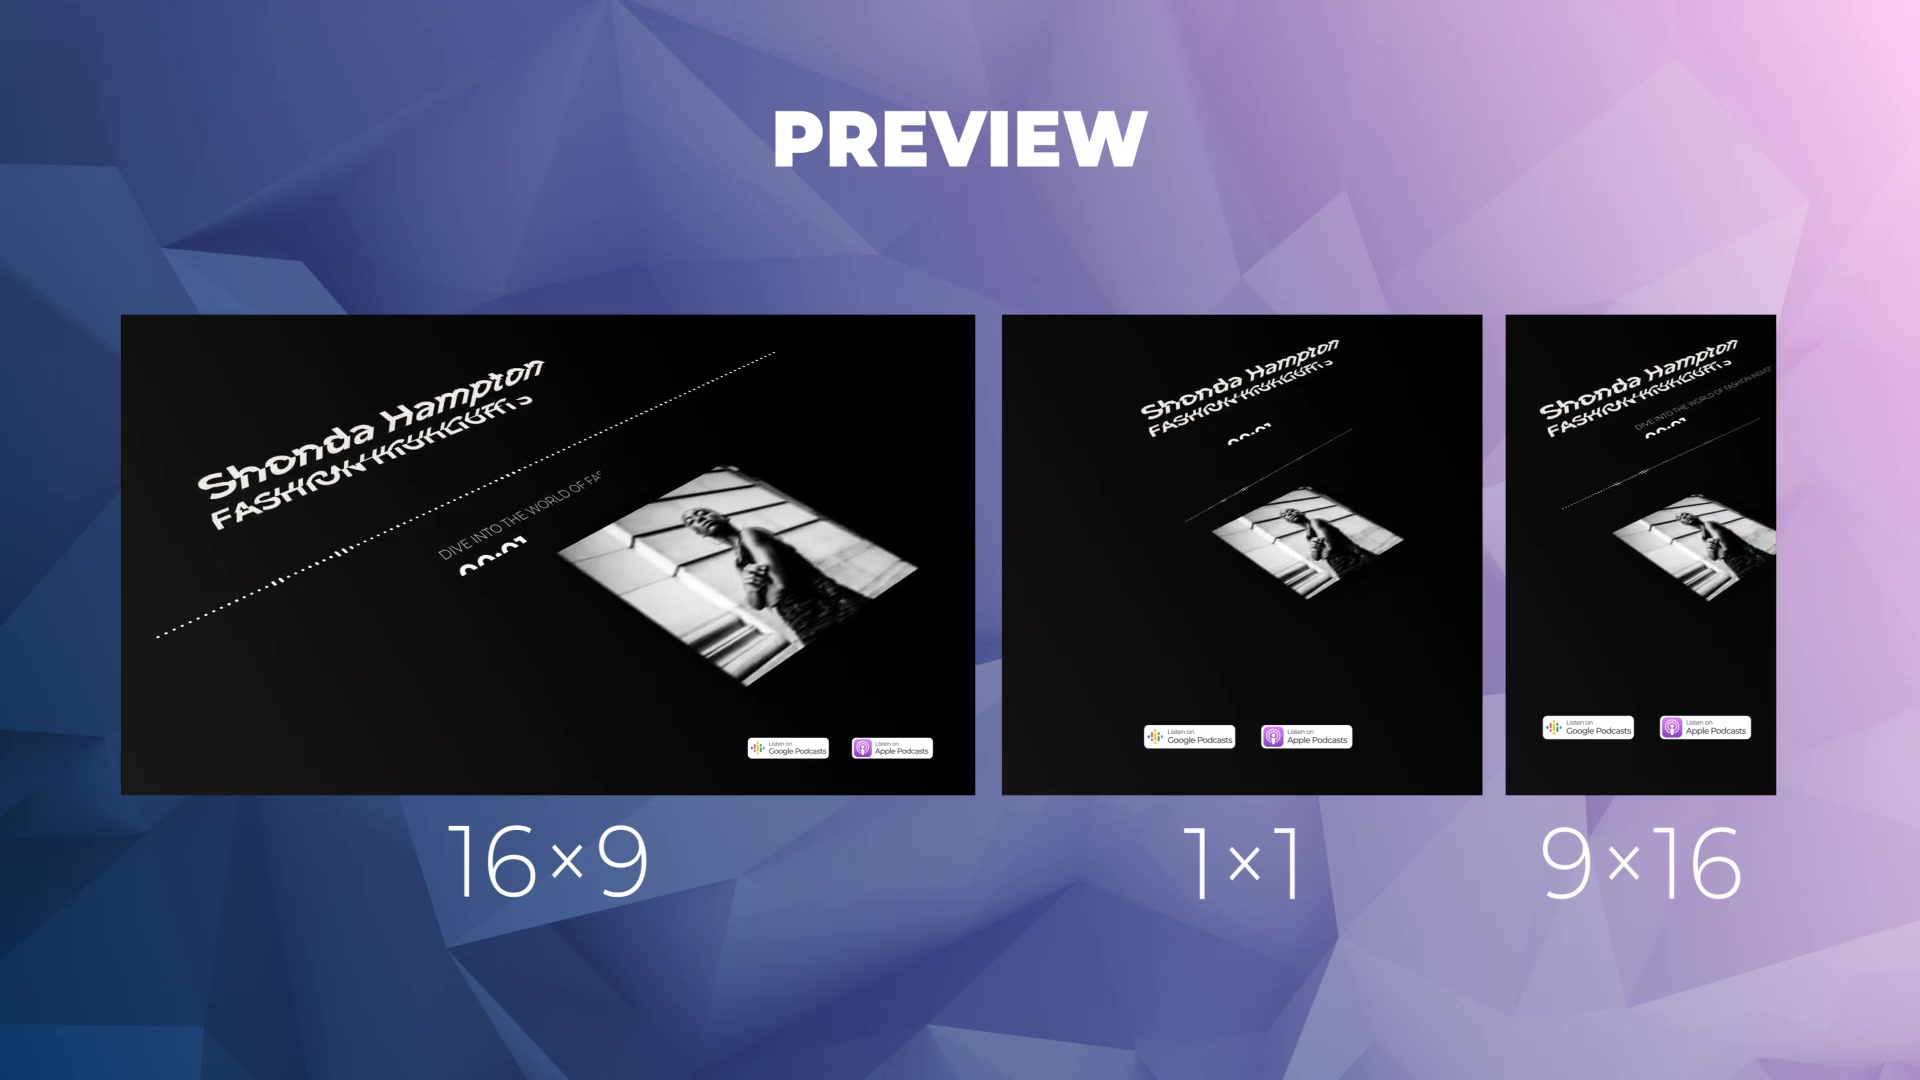 Podcast Visualizations for Premiere Pro Videohive 27411627 Premiere Pro Image 6